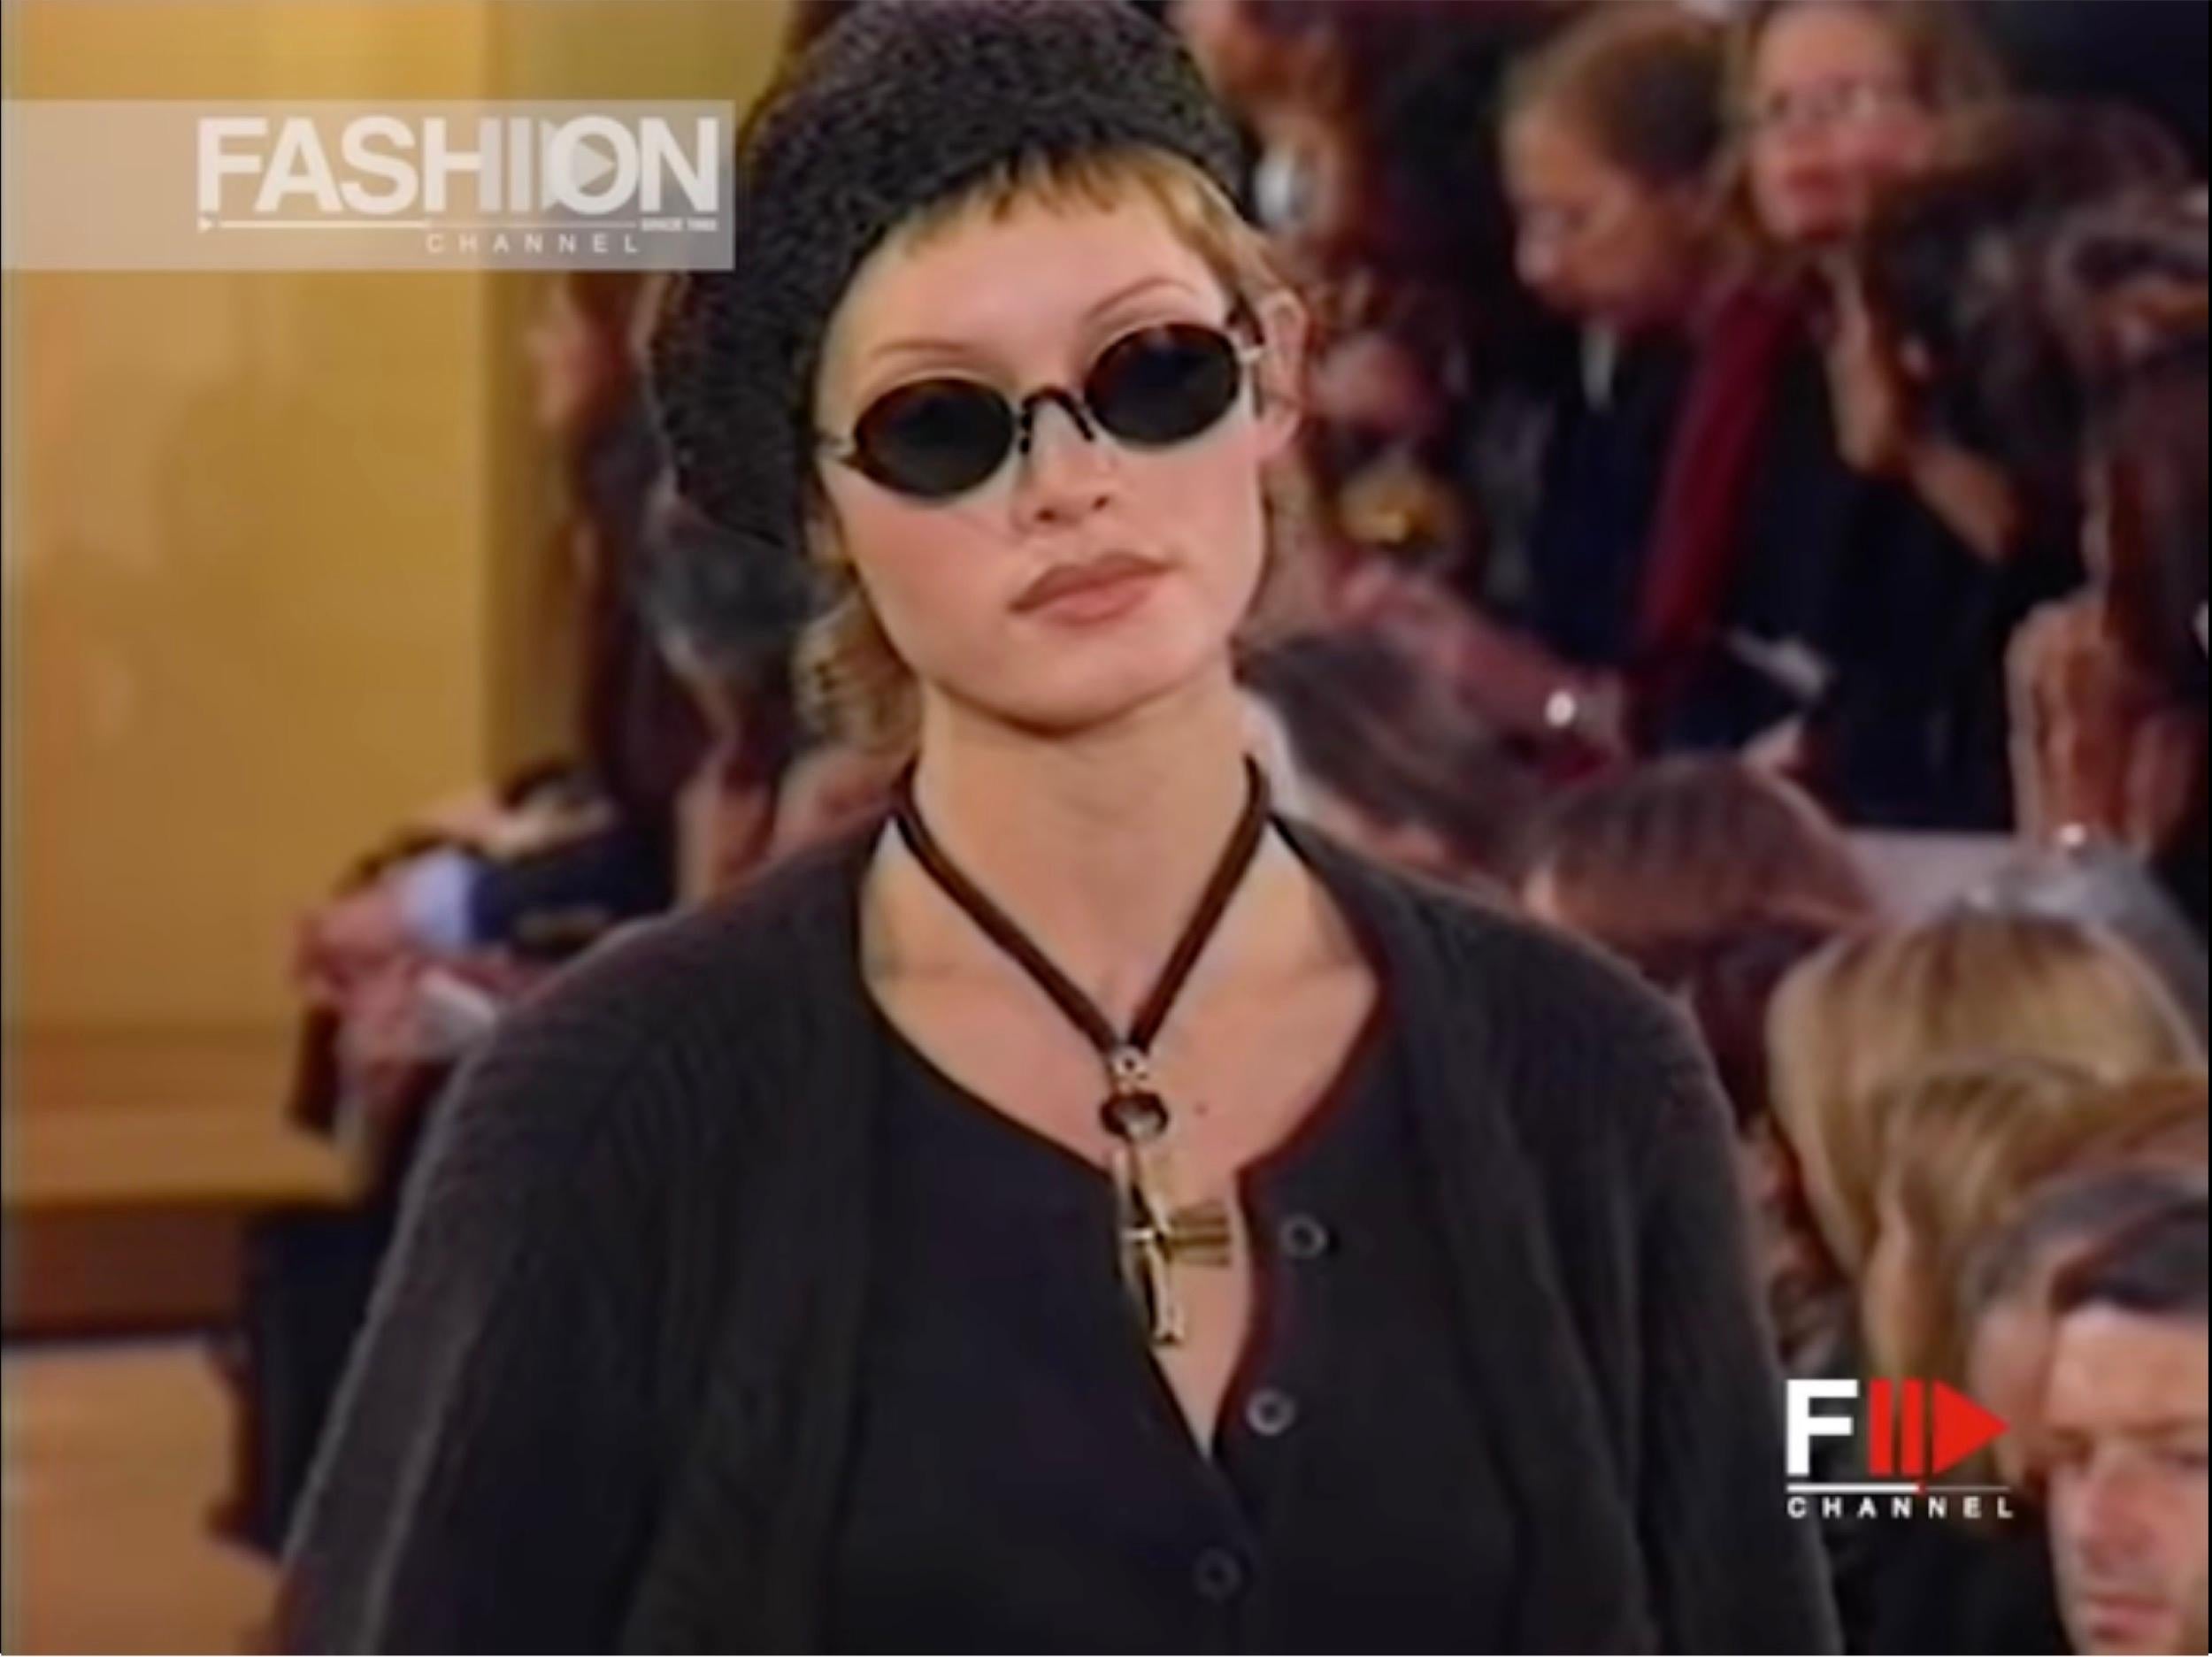 Donna Karan FW 1993
Zu jedem Look gehörte eine Baskenmütze in grauen, braunen und schwarzen Farben, entweder aus Samt oder aus gestrickter Chenille.  
Dieses ist ein braunes (fast schwarzes) ultraweiches Strick-Chenile.
Radius hat eine gewisse